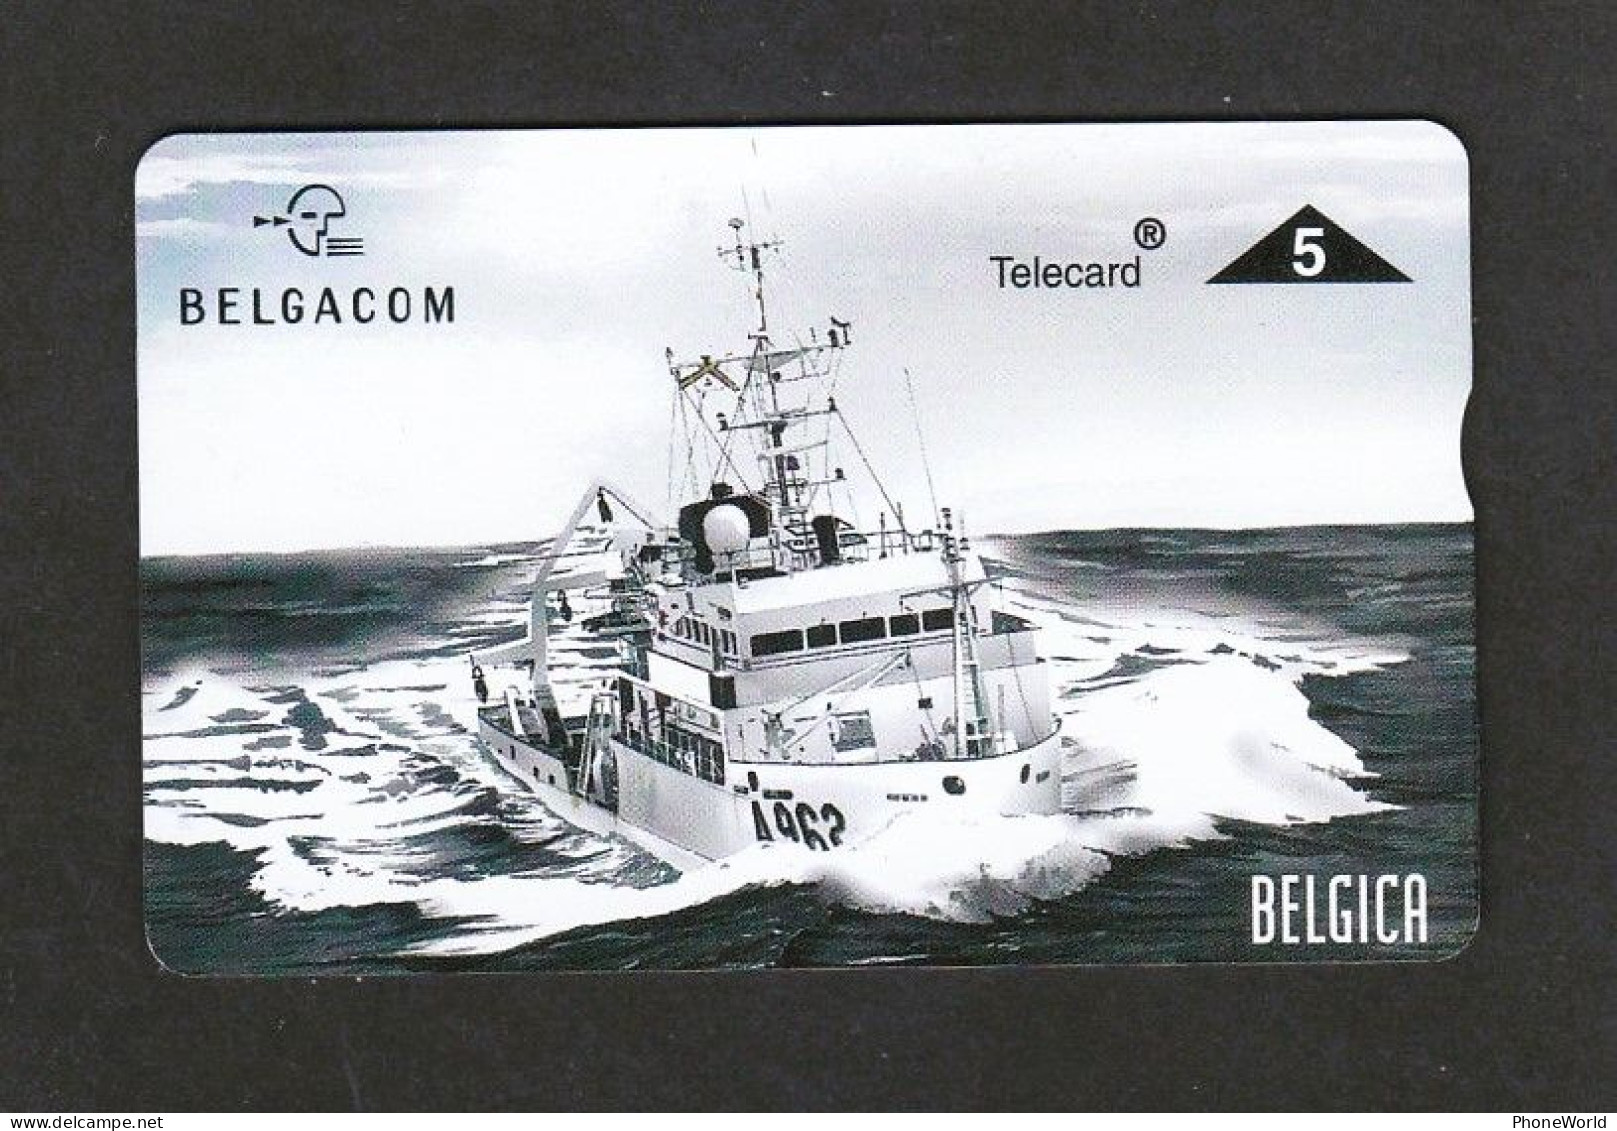 Belgacom, P551 - Belgica 2 - 706 L Mint - Ship - Army - Ohne Chip